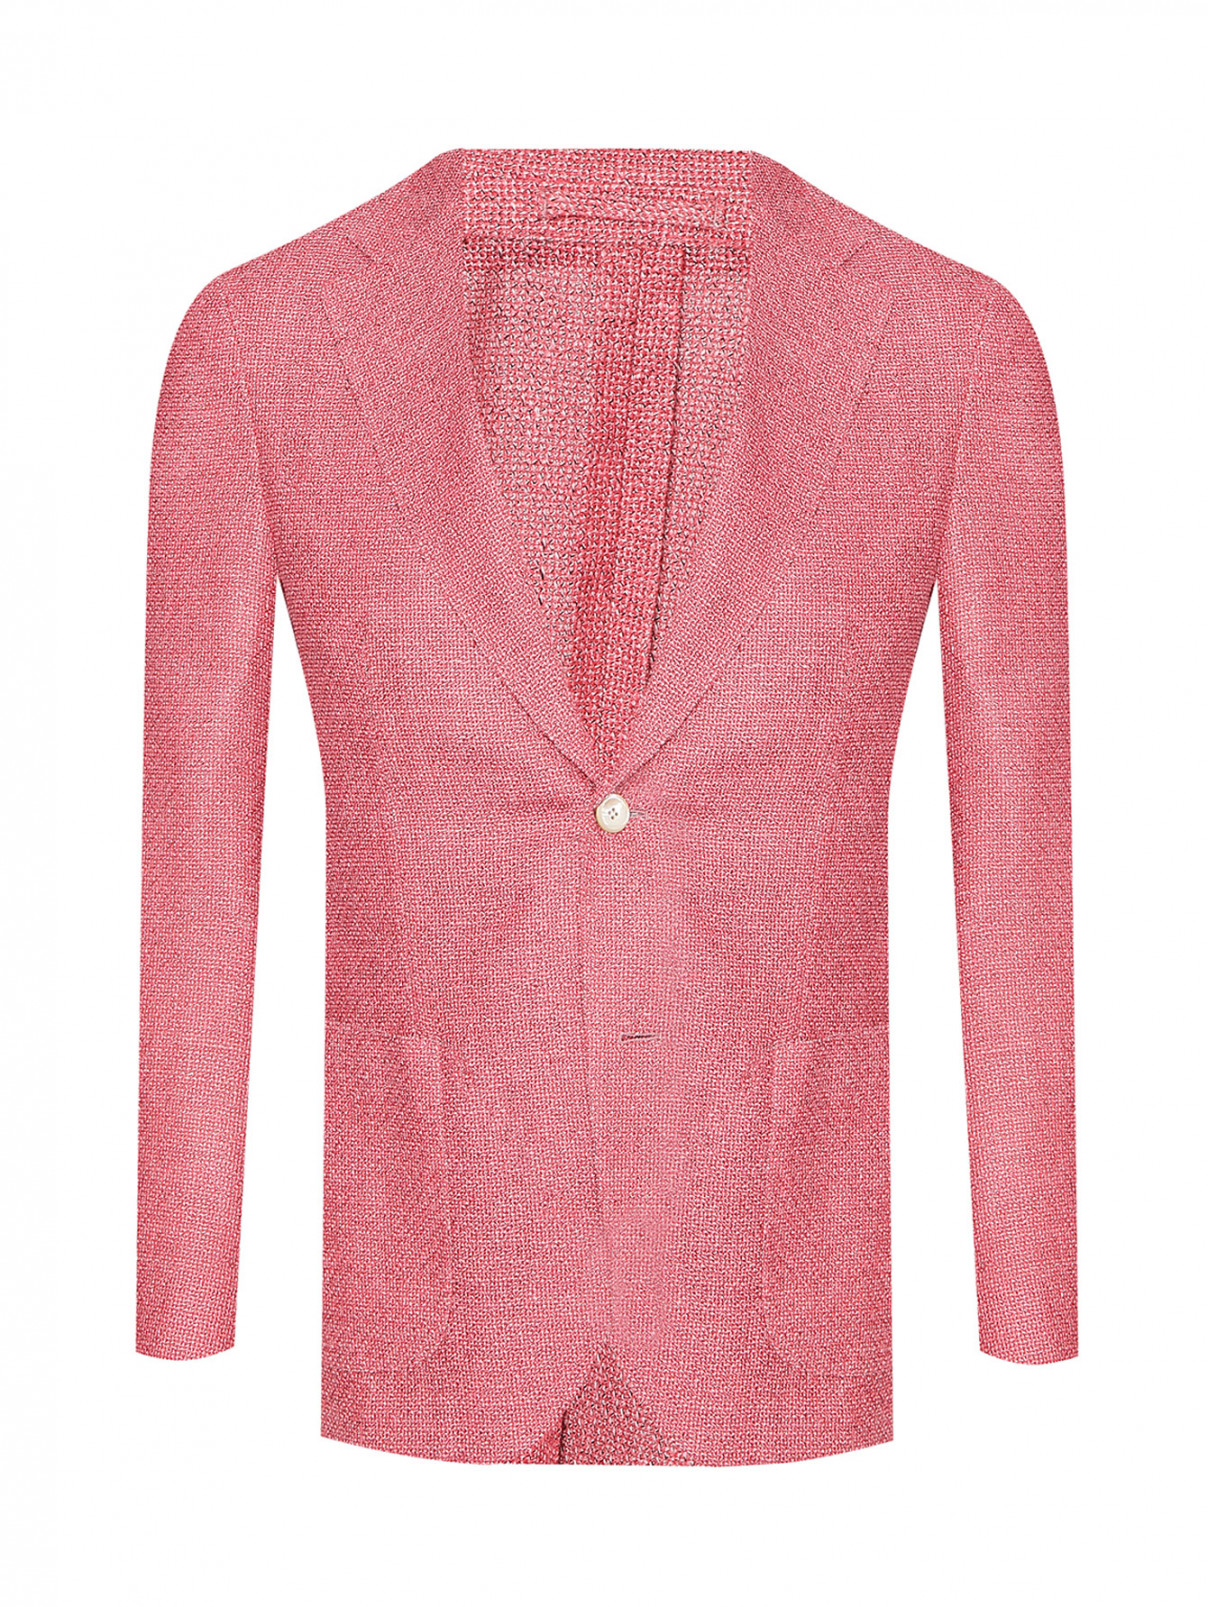 Однобортный пиджак из шерсти и шелка LARDINI  –  Общий вид  – Цвет:  Красный